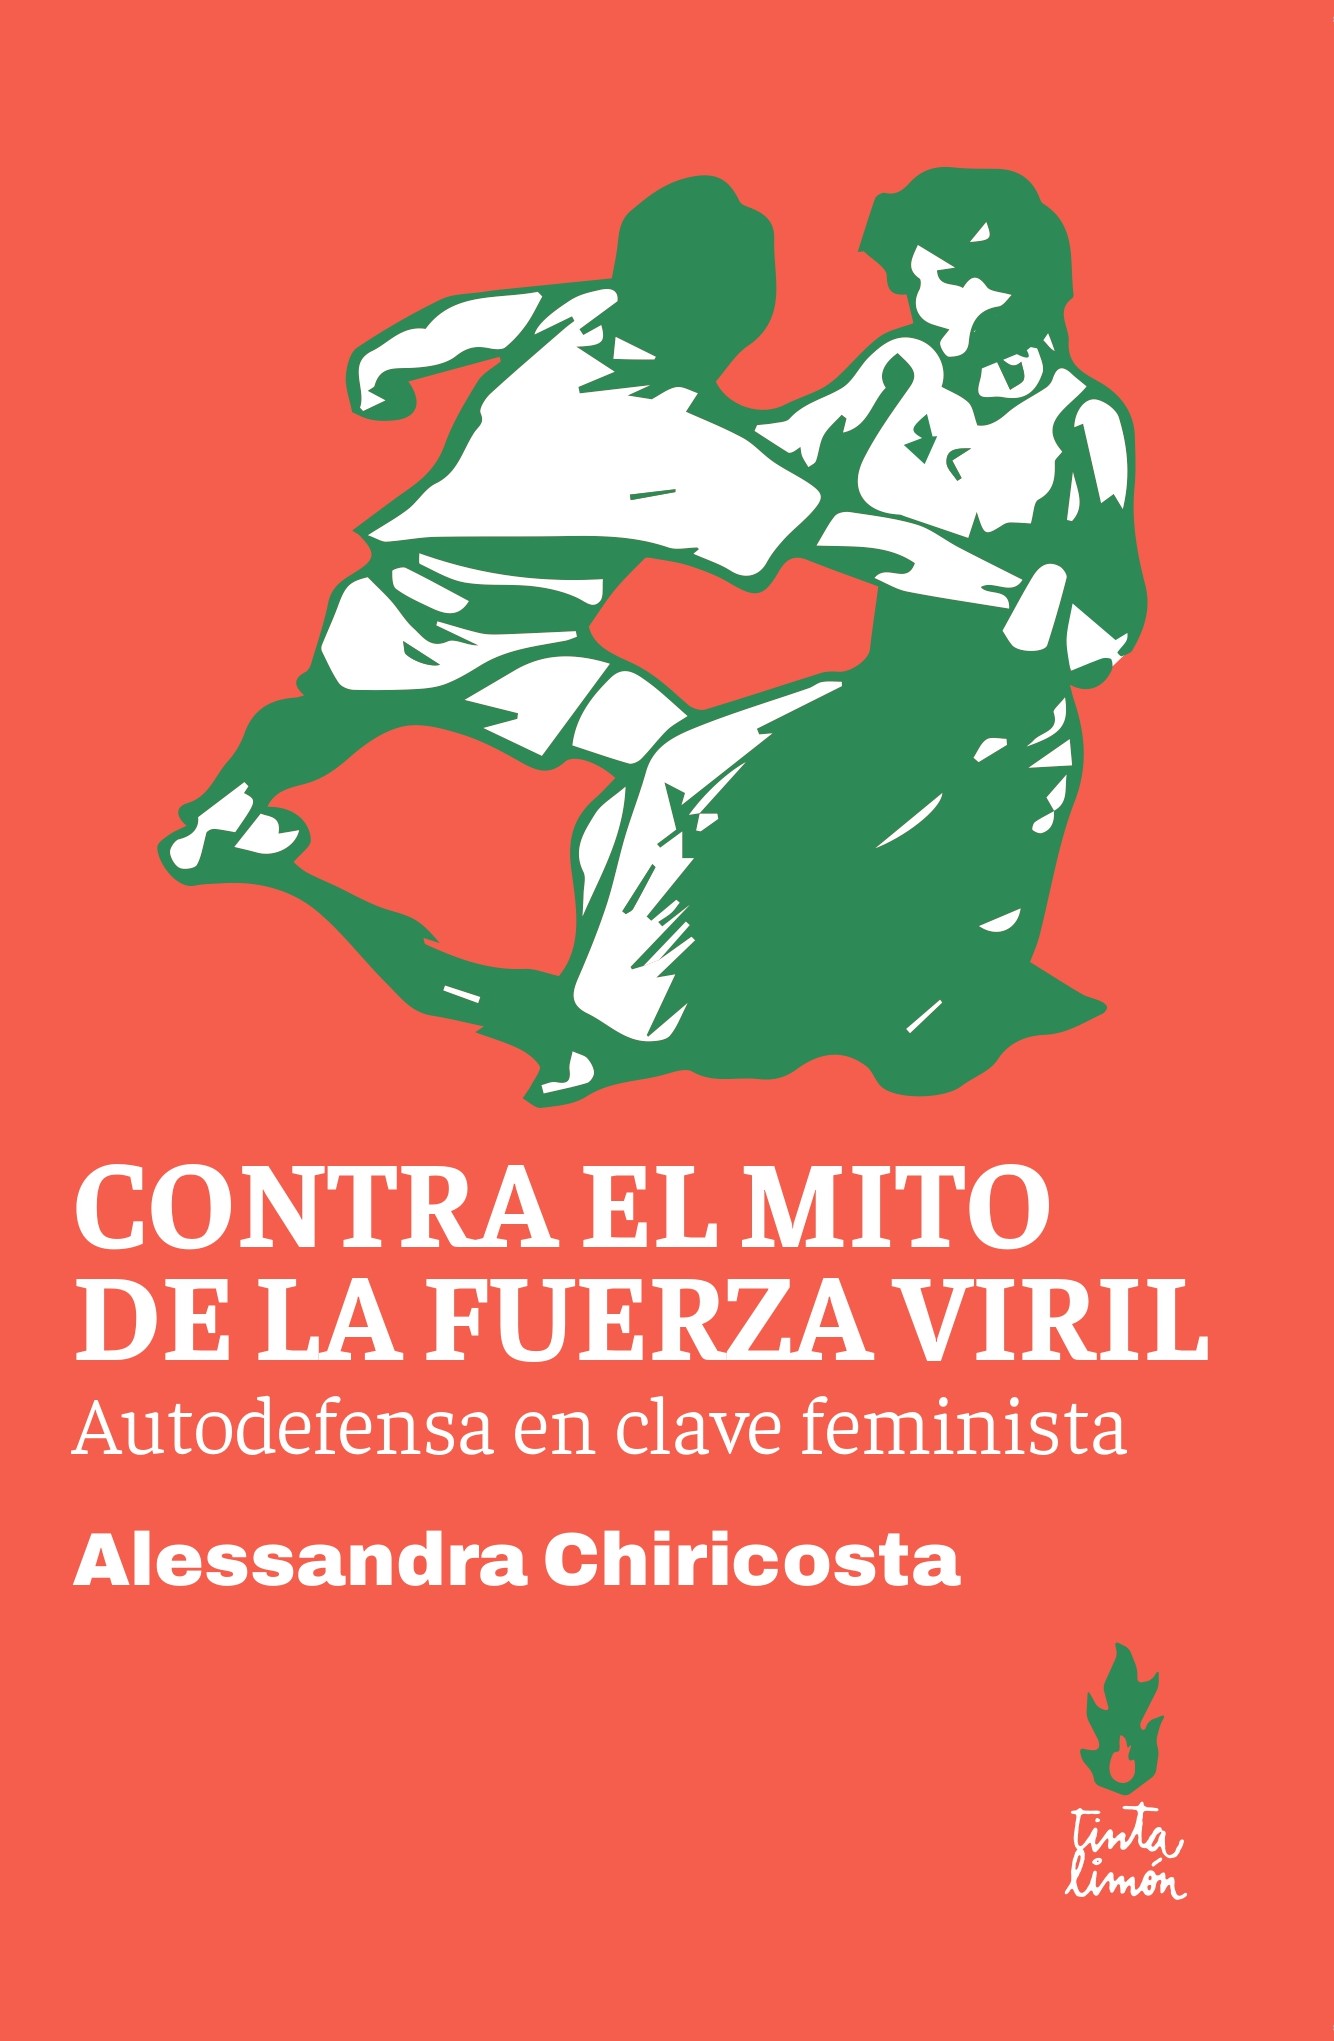 Contra el mito de la fuerza viril - Alessandra Chiricosta